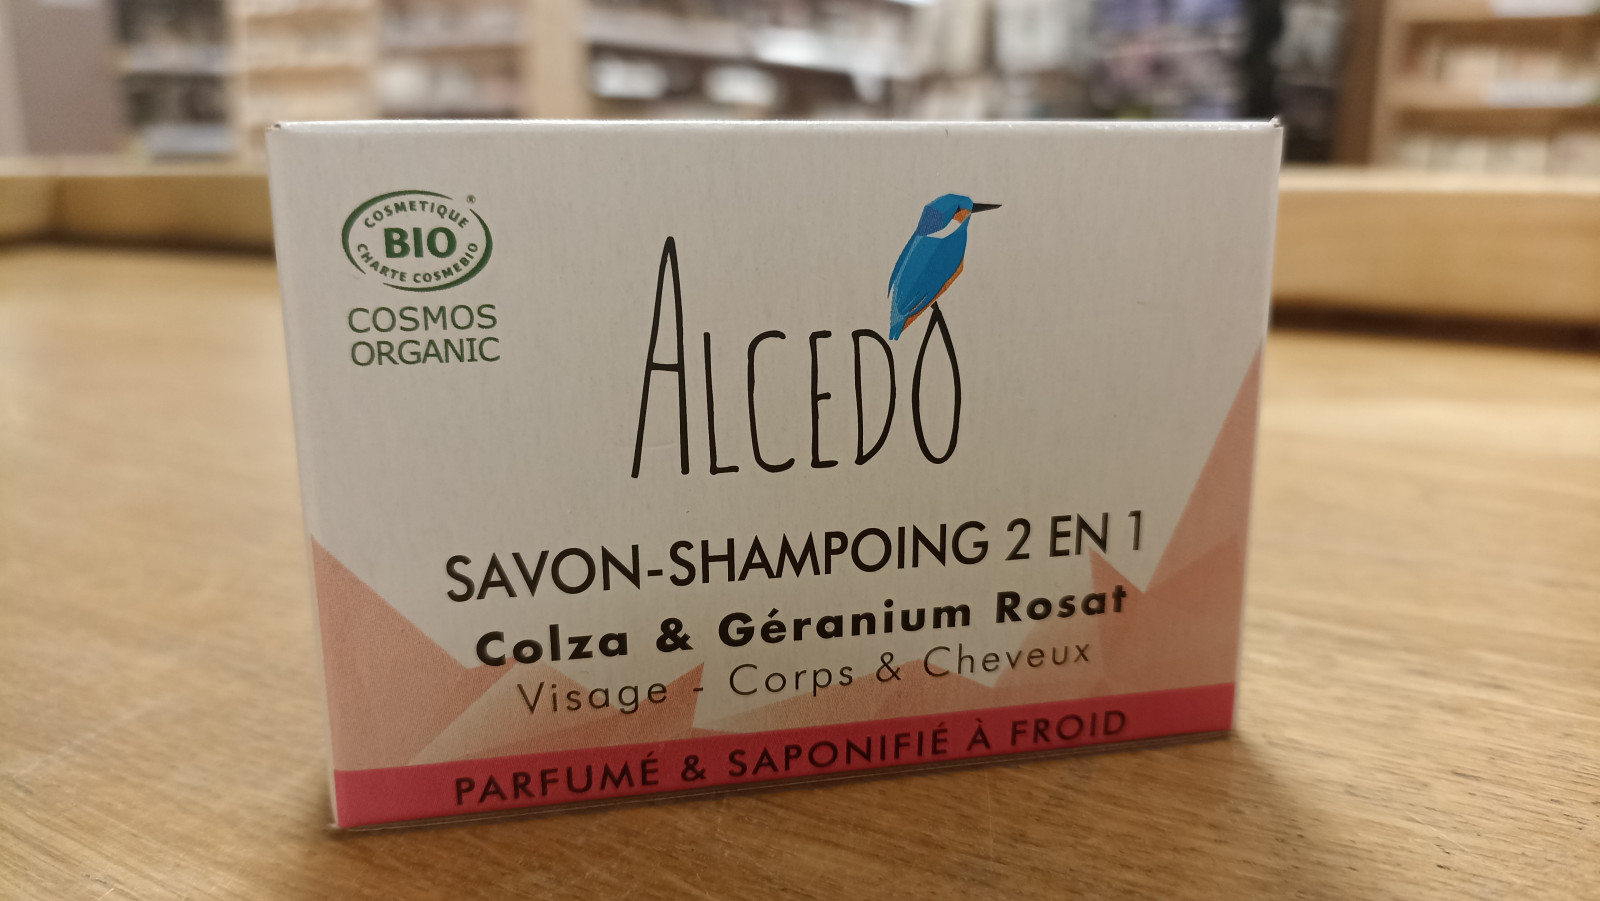 Savon shampoing 2 en 1 Colza & Géranium 100g Alcedo